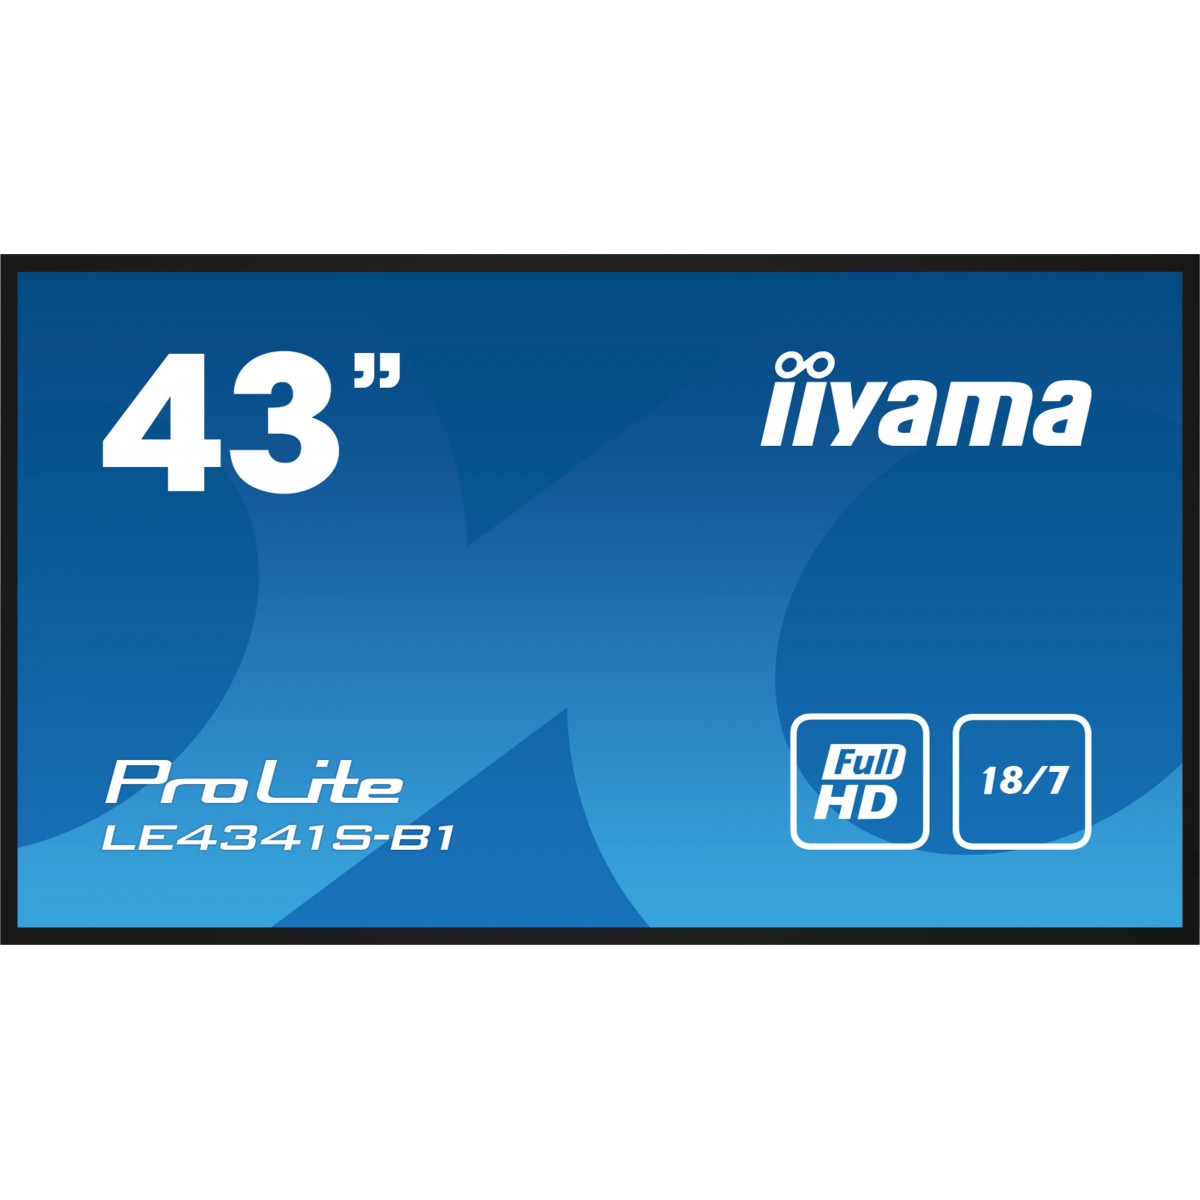 Iiyama 108cm 42.5 LE4341S-B1 16 9 3xHDMI+USB IPS bl retail - 108 cm - 43